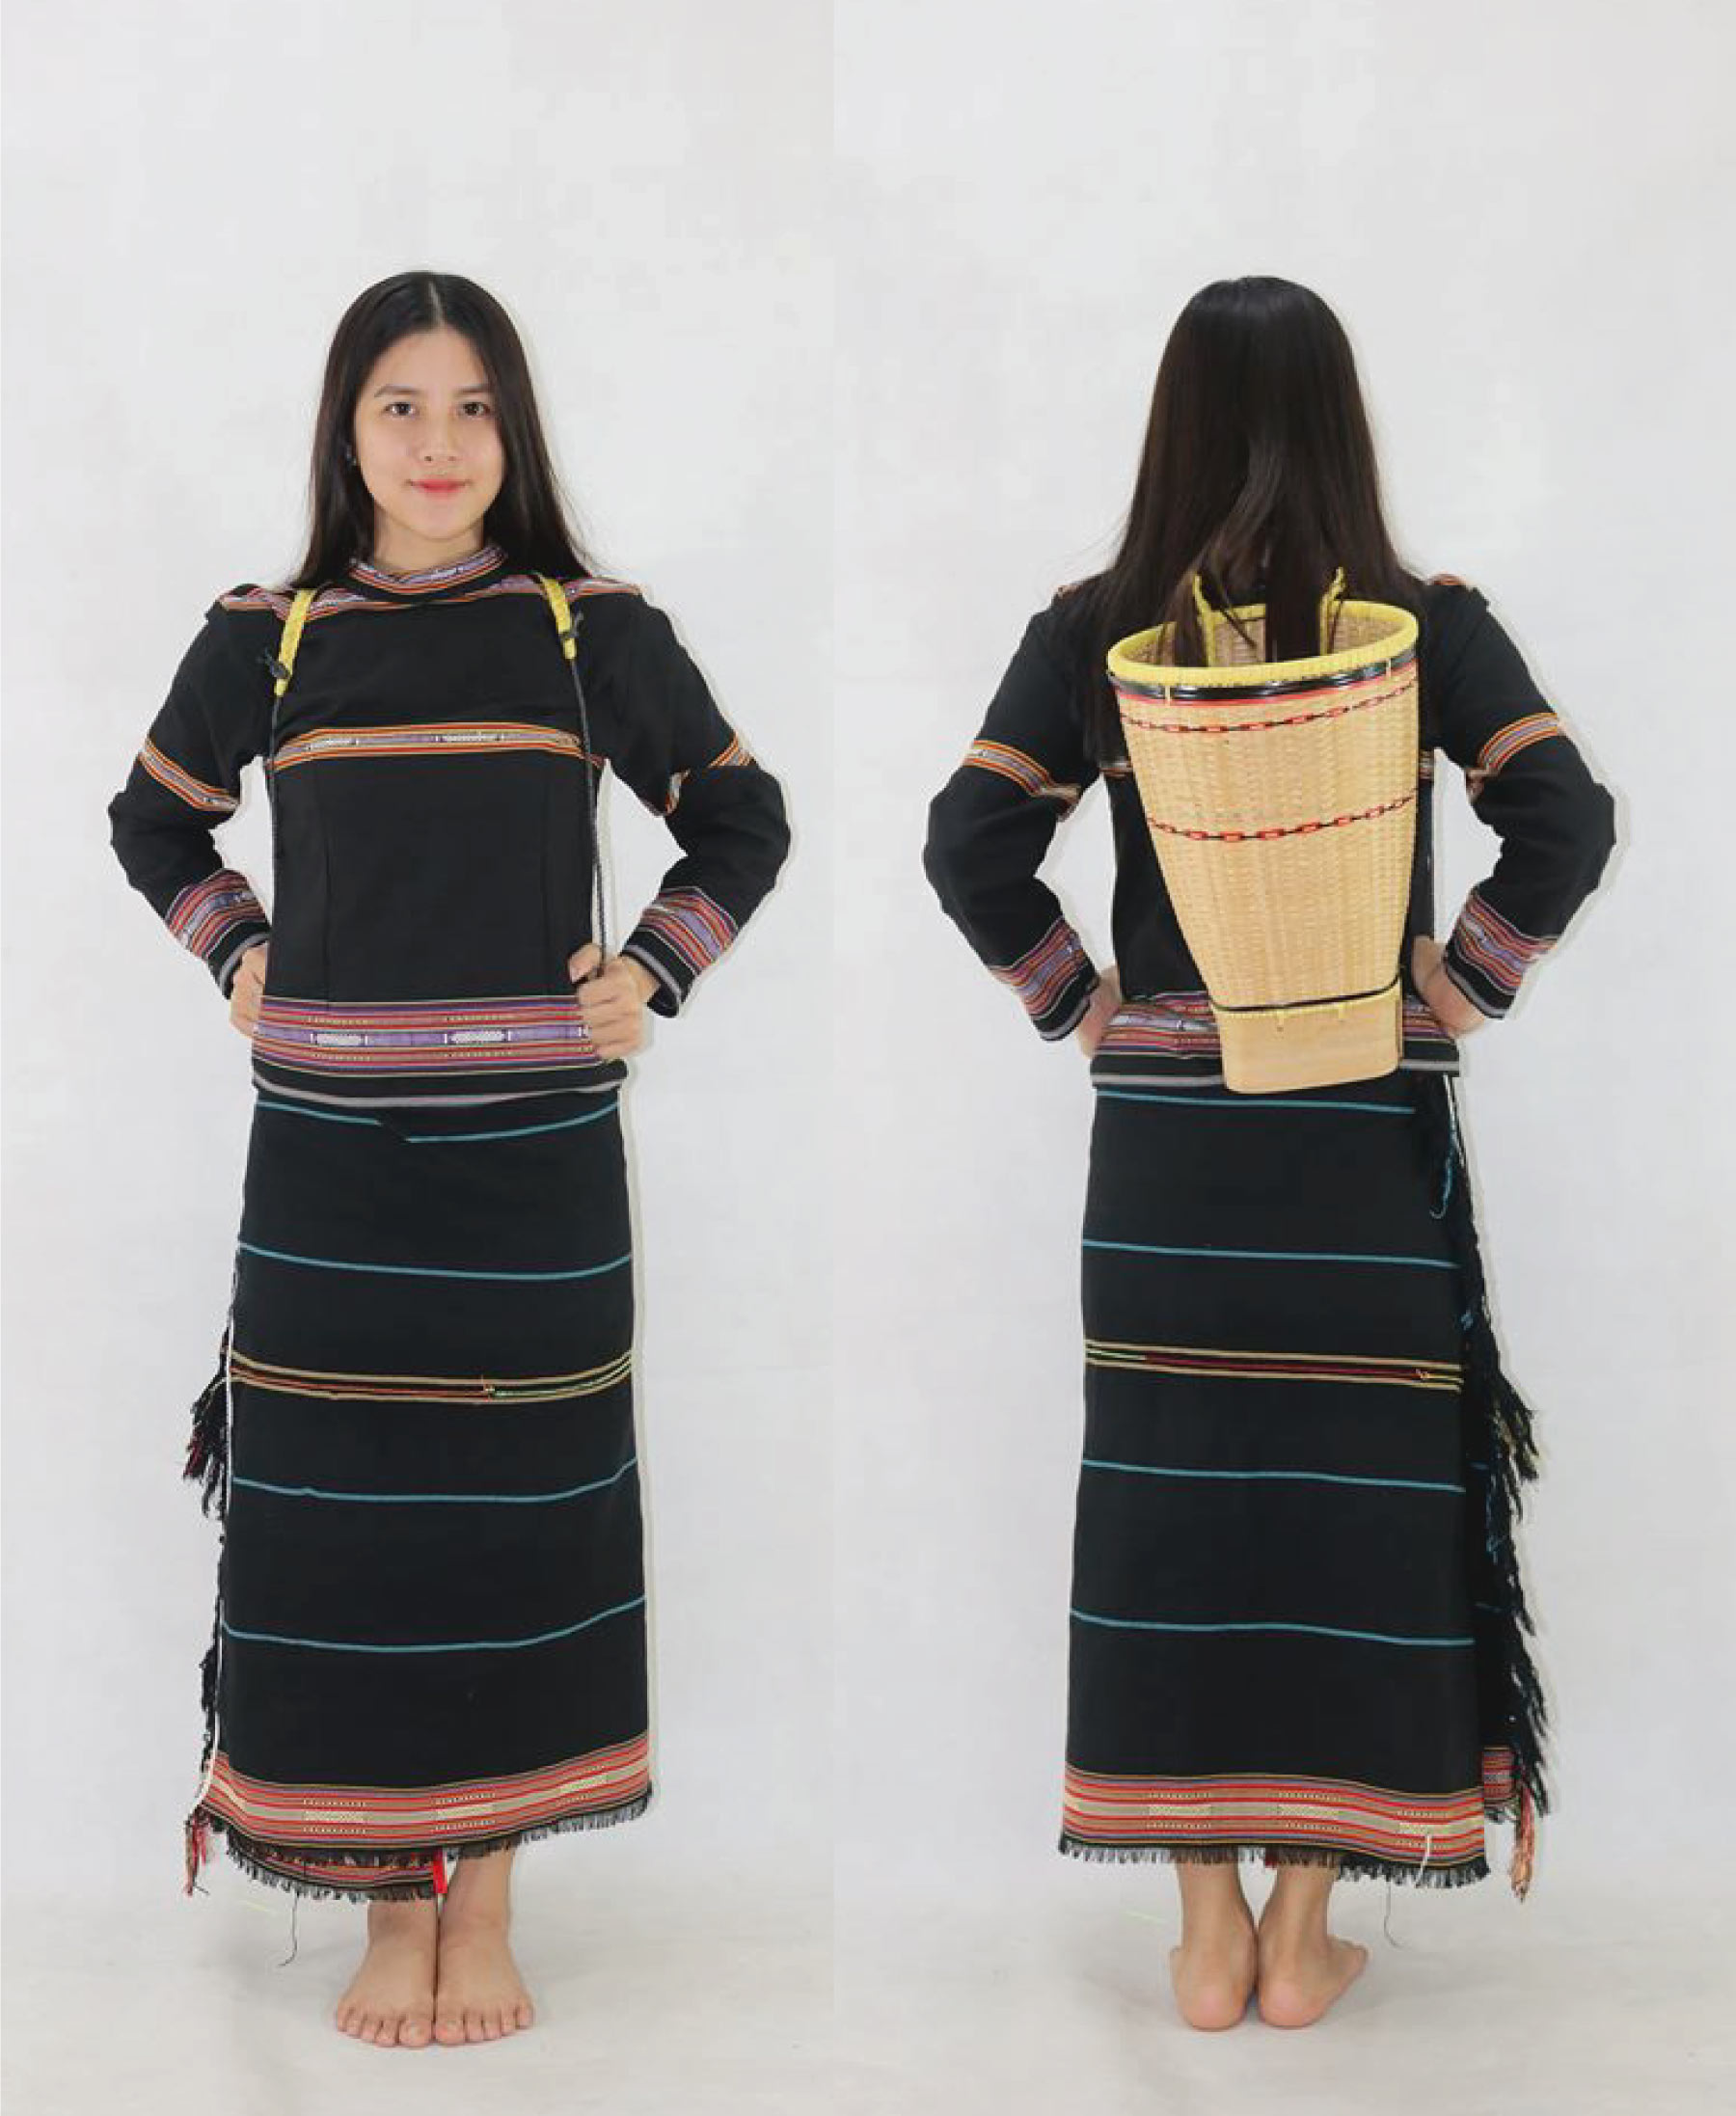 Đồ truyền thống của phụ nữ Ê đê bao gồm váy tấm và áo chui